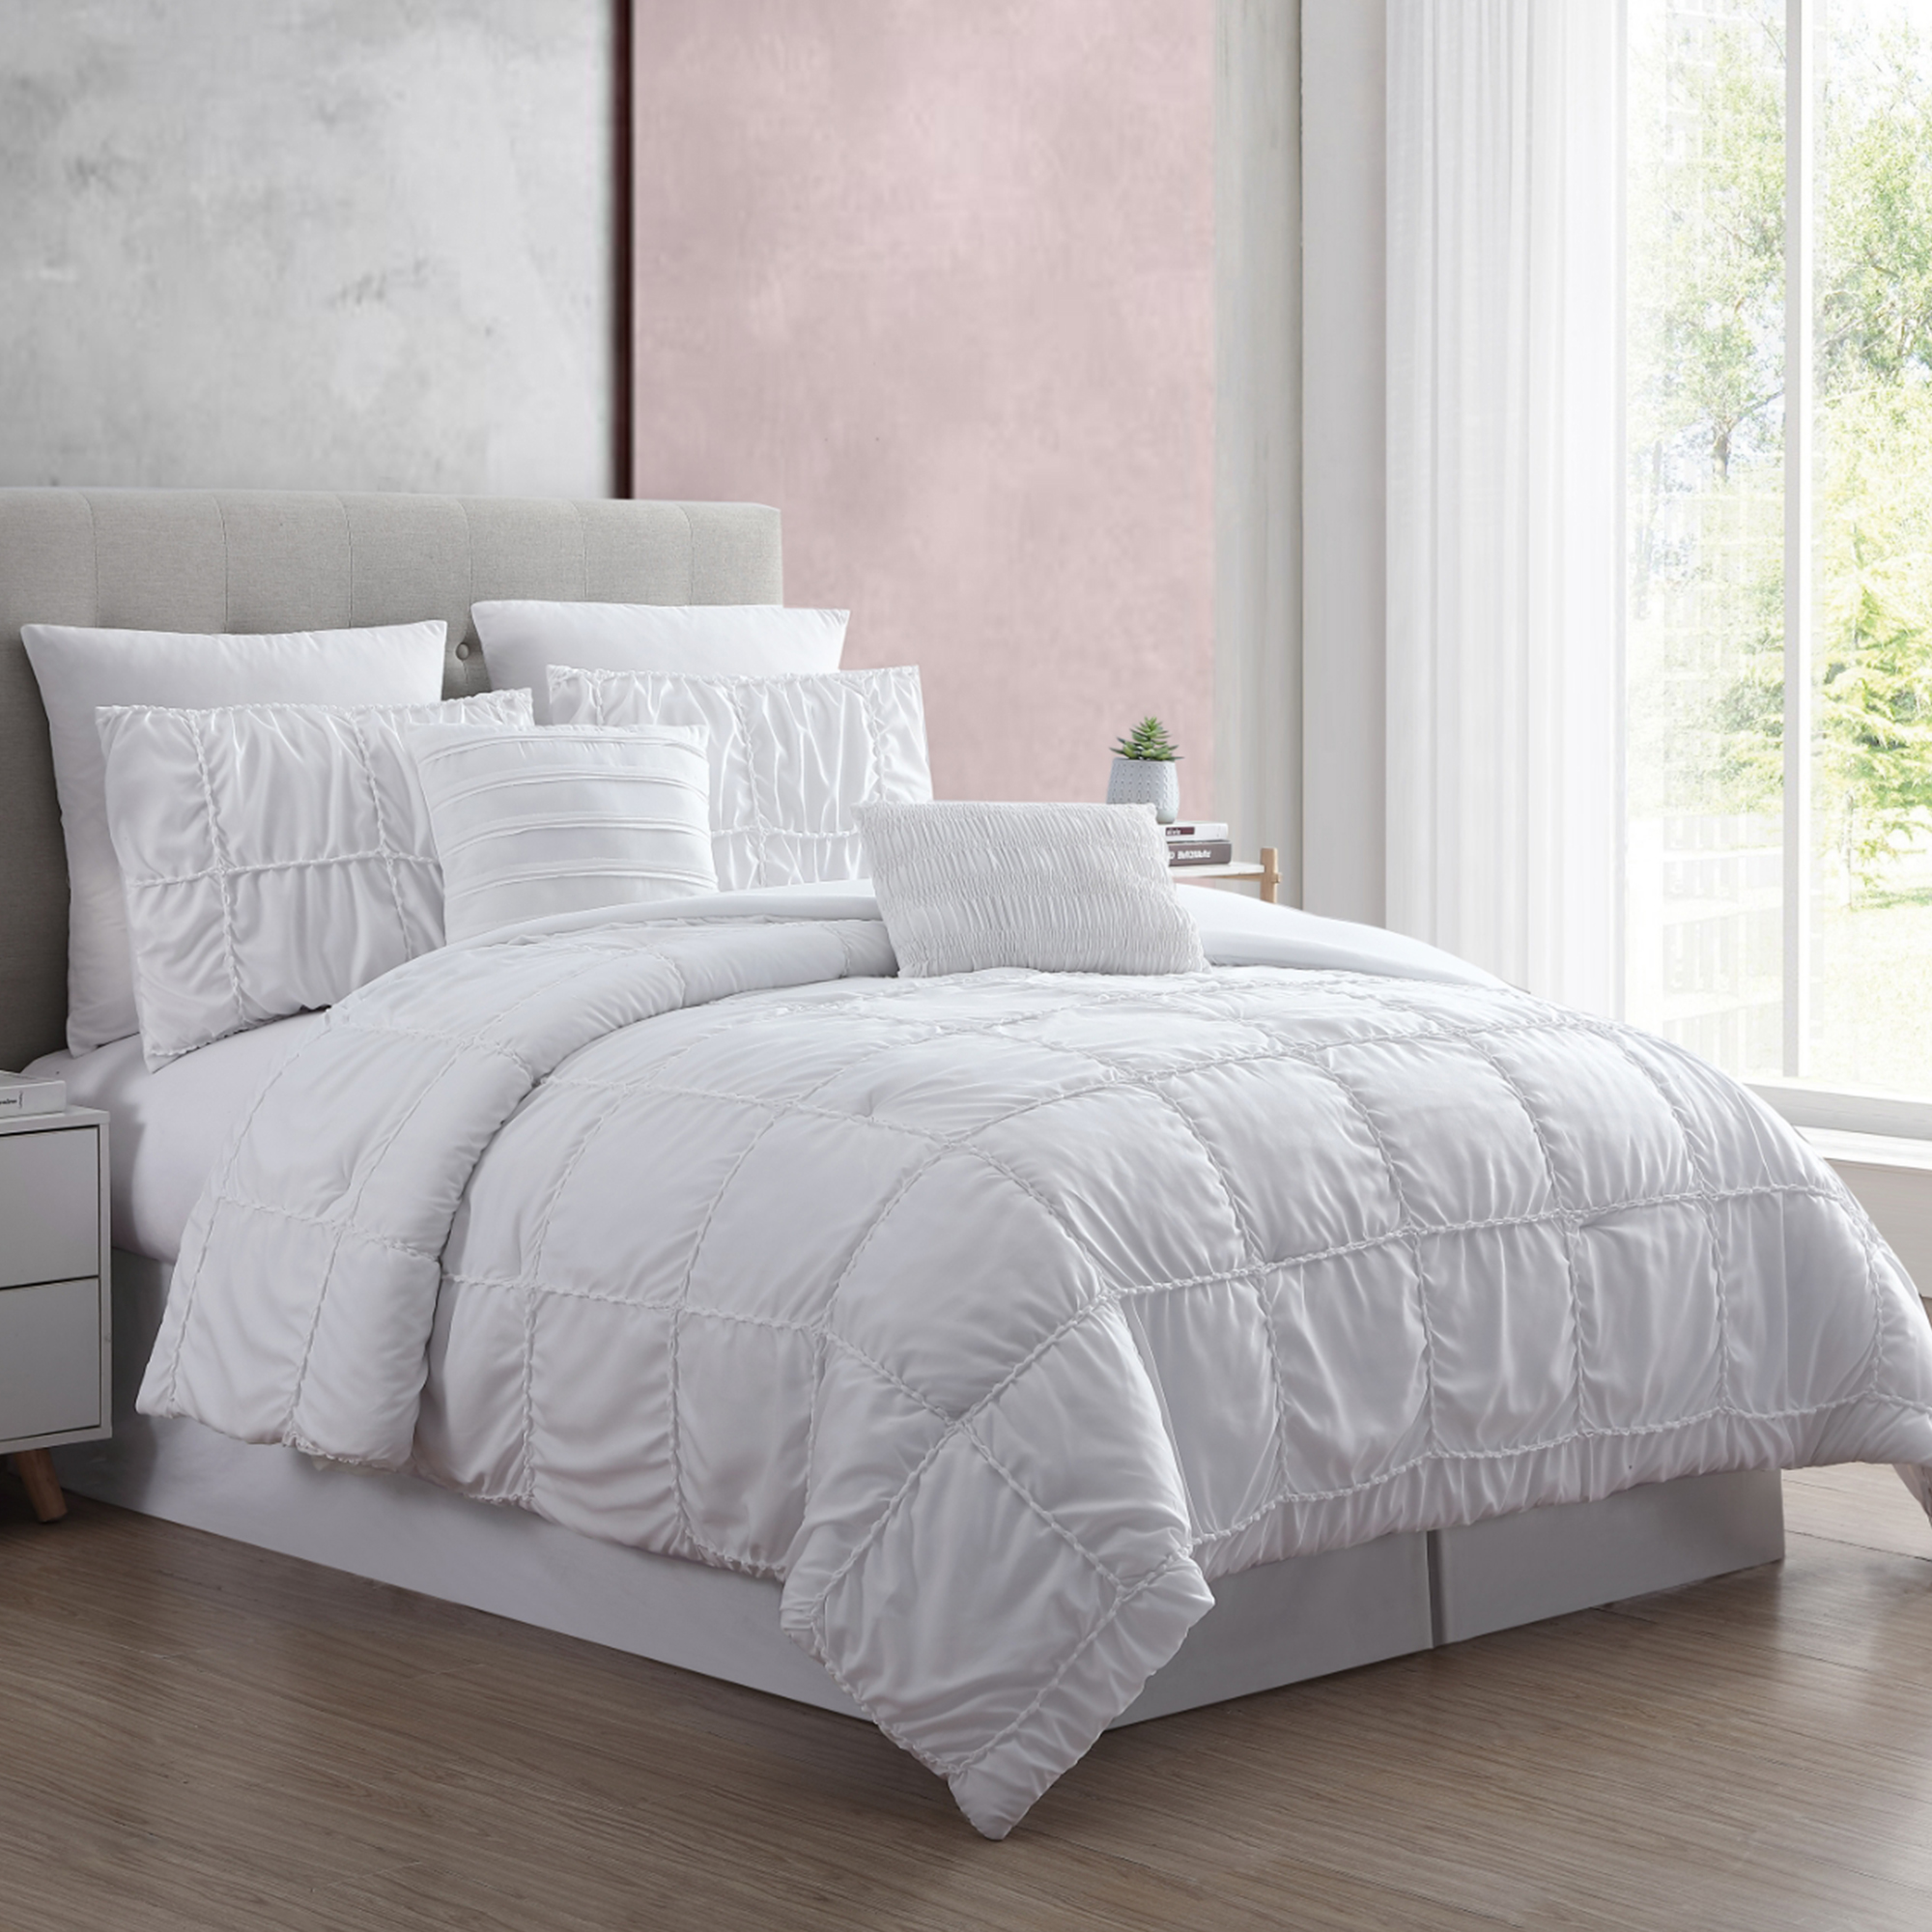 Solid-Comforter-1 Best Sellers in Bedding Comforters